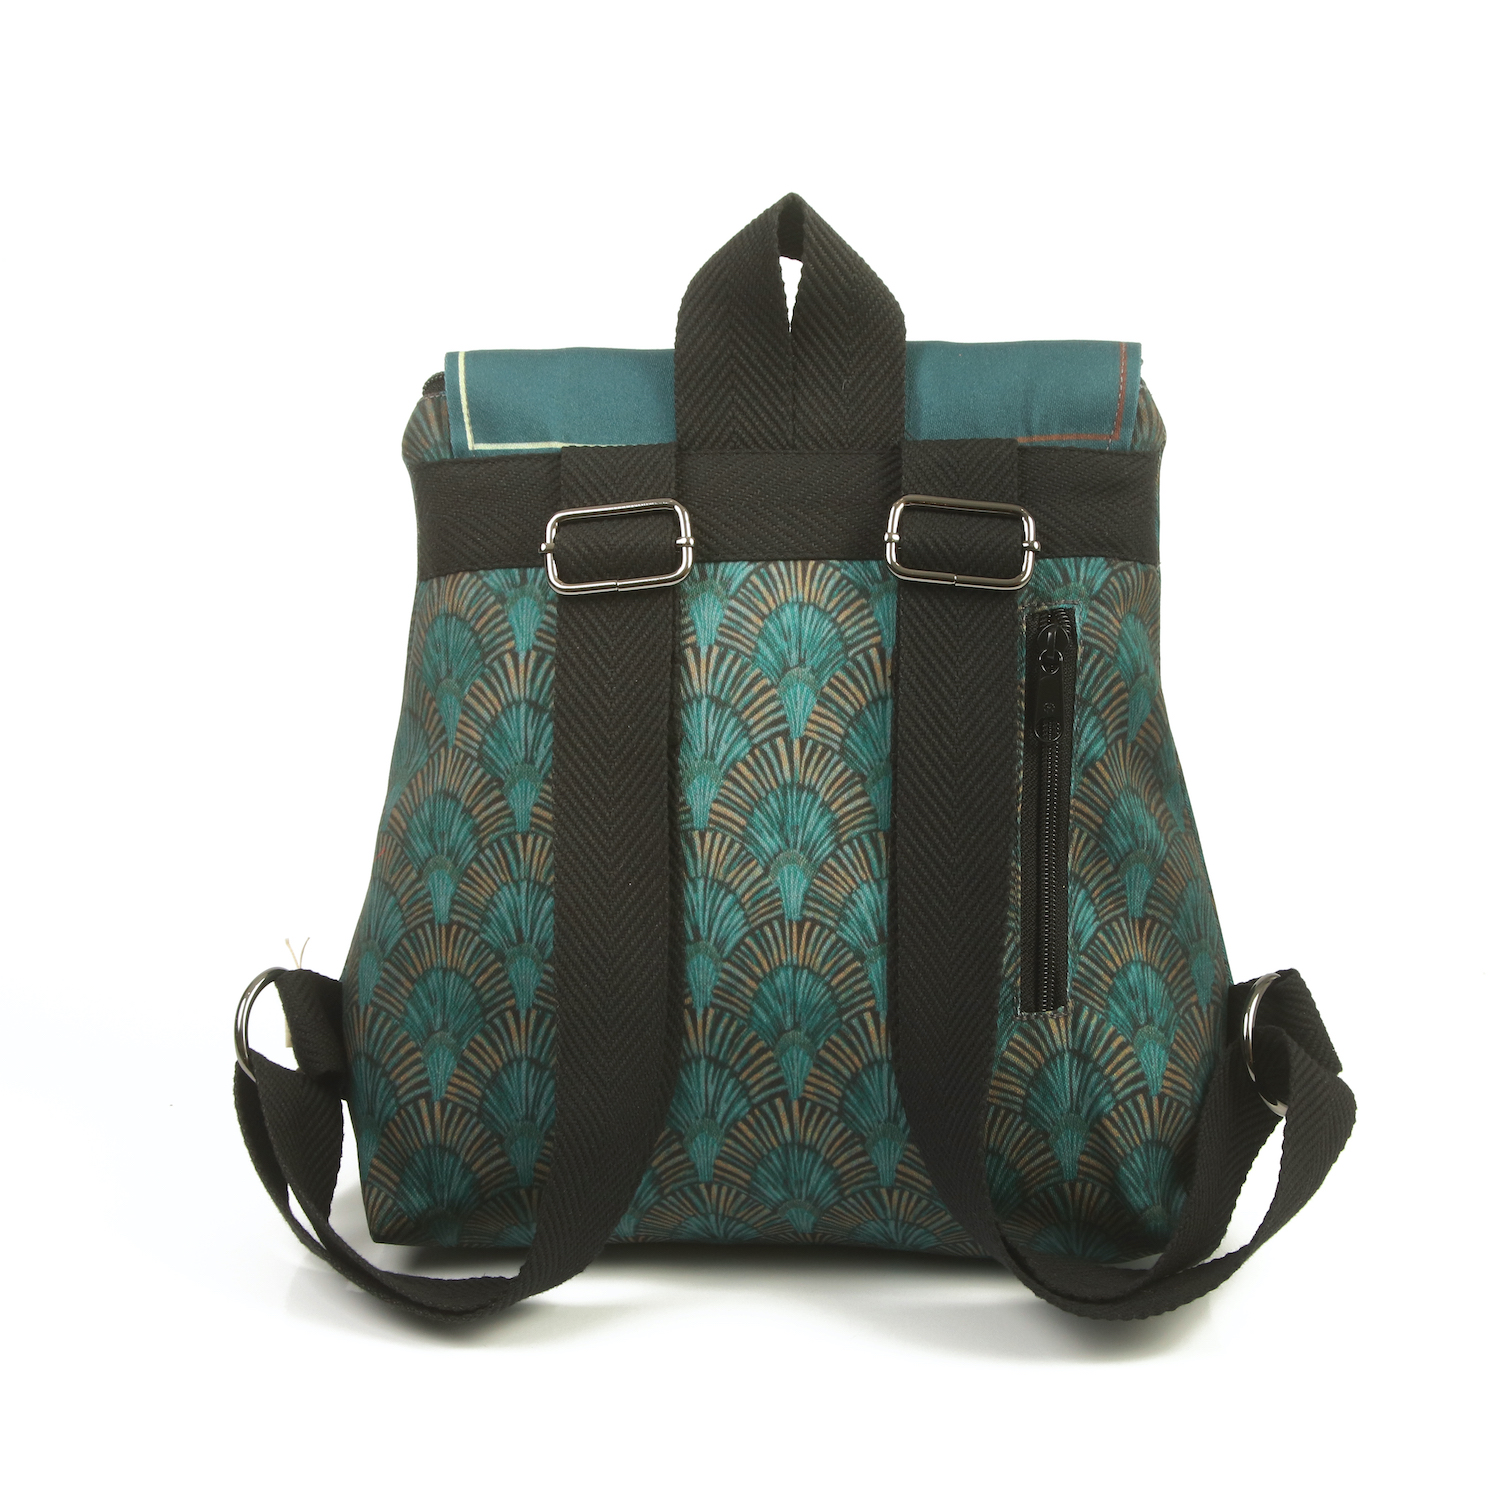 LazyDayz Designs Backpack γυναικείος σάκος πλάτης χειροποίητος bb0302c